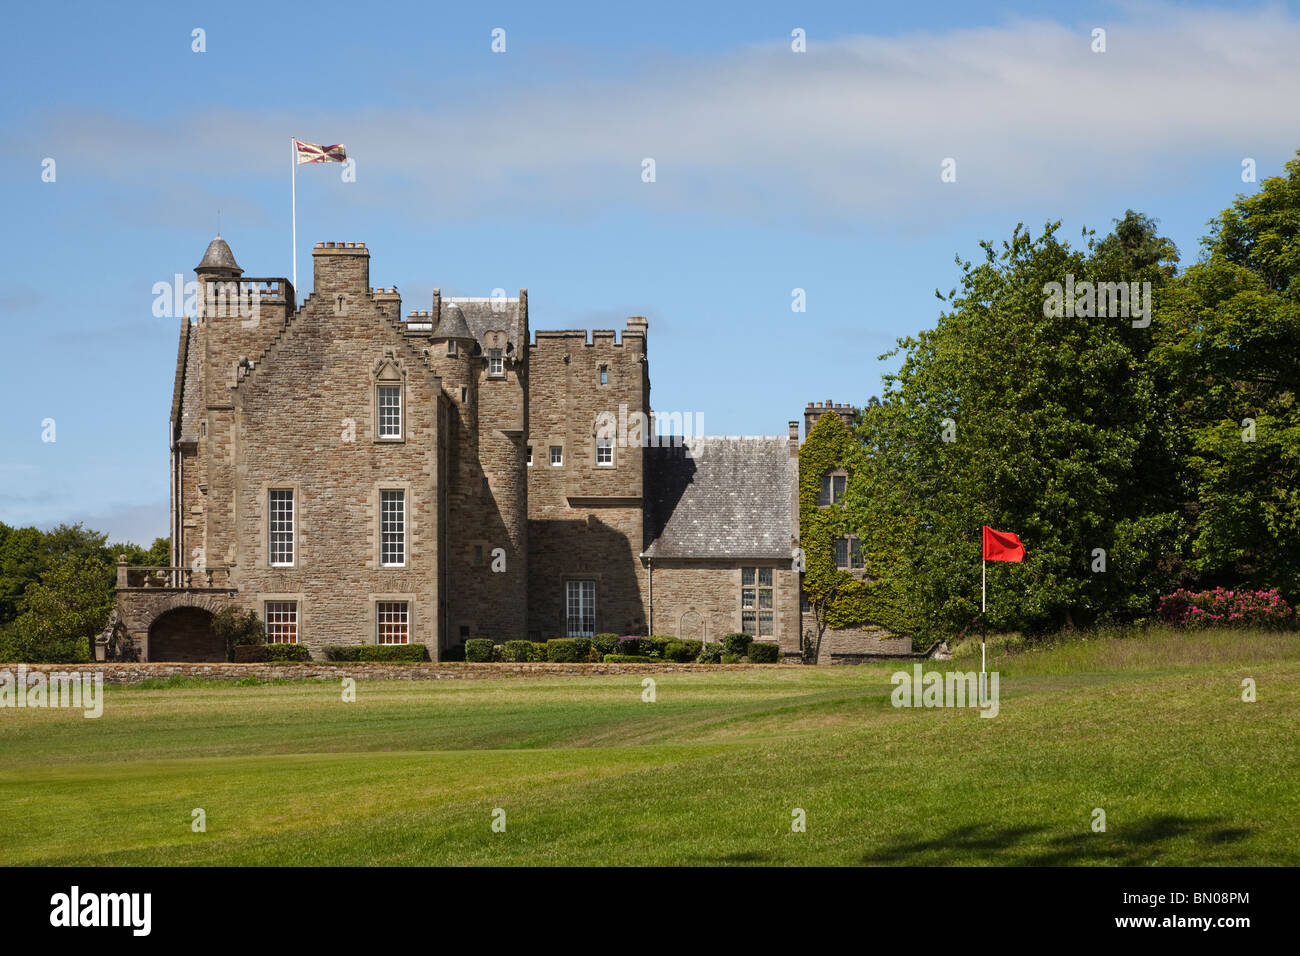 Rowallan Castle, Golfclub in der Nähe von Kilmaurs, Ayrshire, Schottland. Blick auf 19. Grün. Kurs von Colin Montgomery. Stockfoto